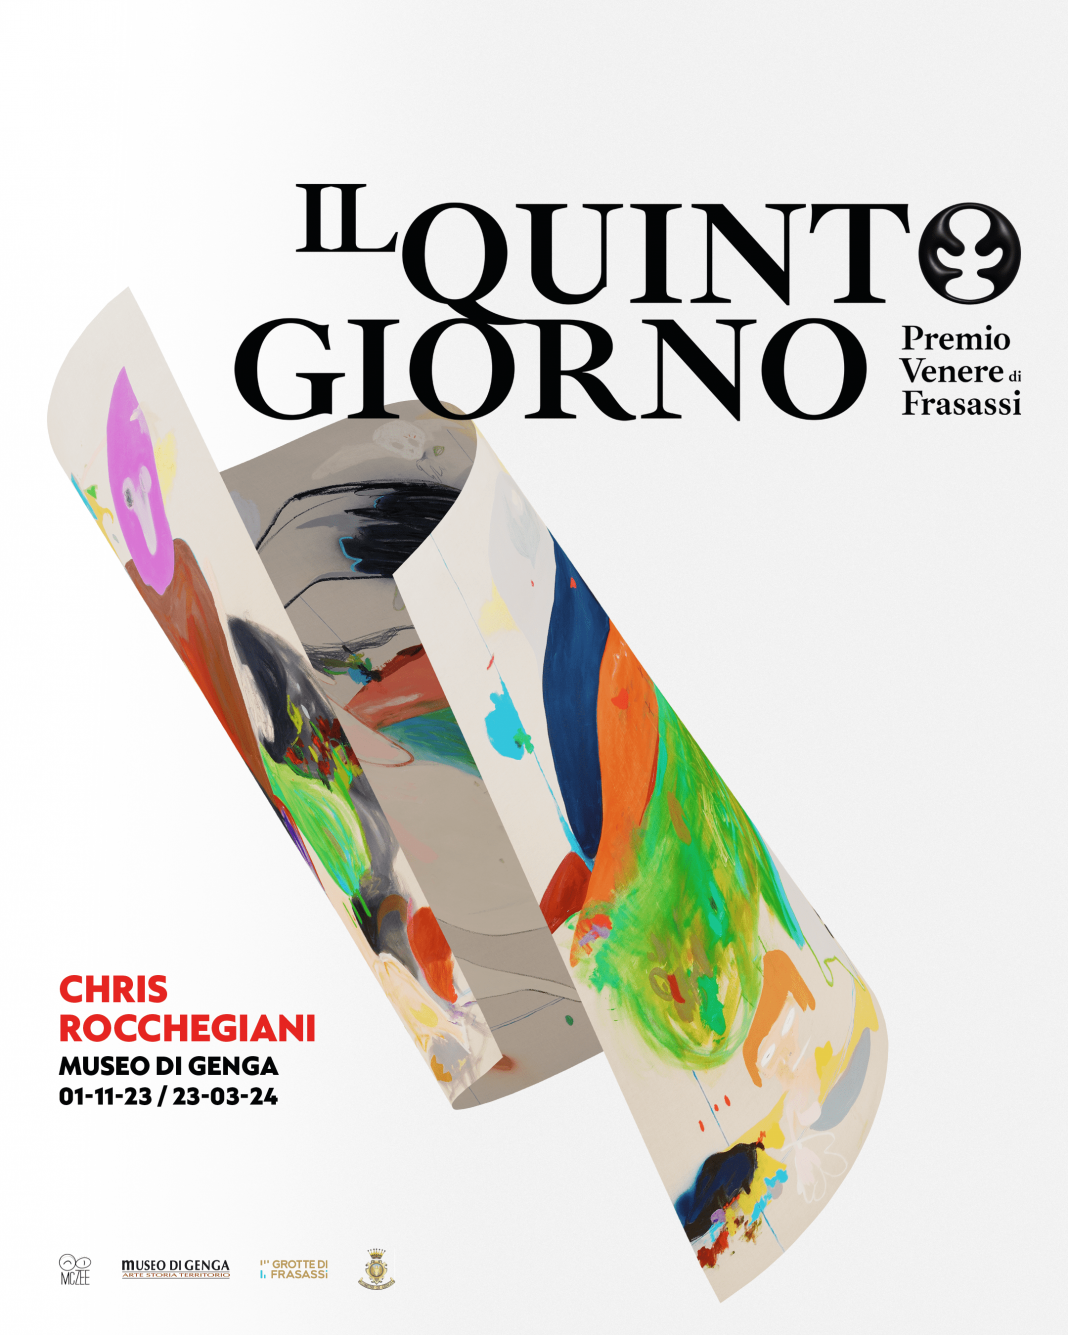 Chris Rocchegiani – Il Quinto Giorno / Premio Venere di Frasassi 2023https://www.exibart.com/repository/media/formidable/11/img/a71/cris-1068x1335.png